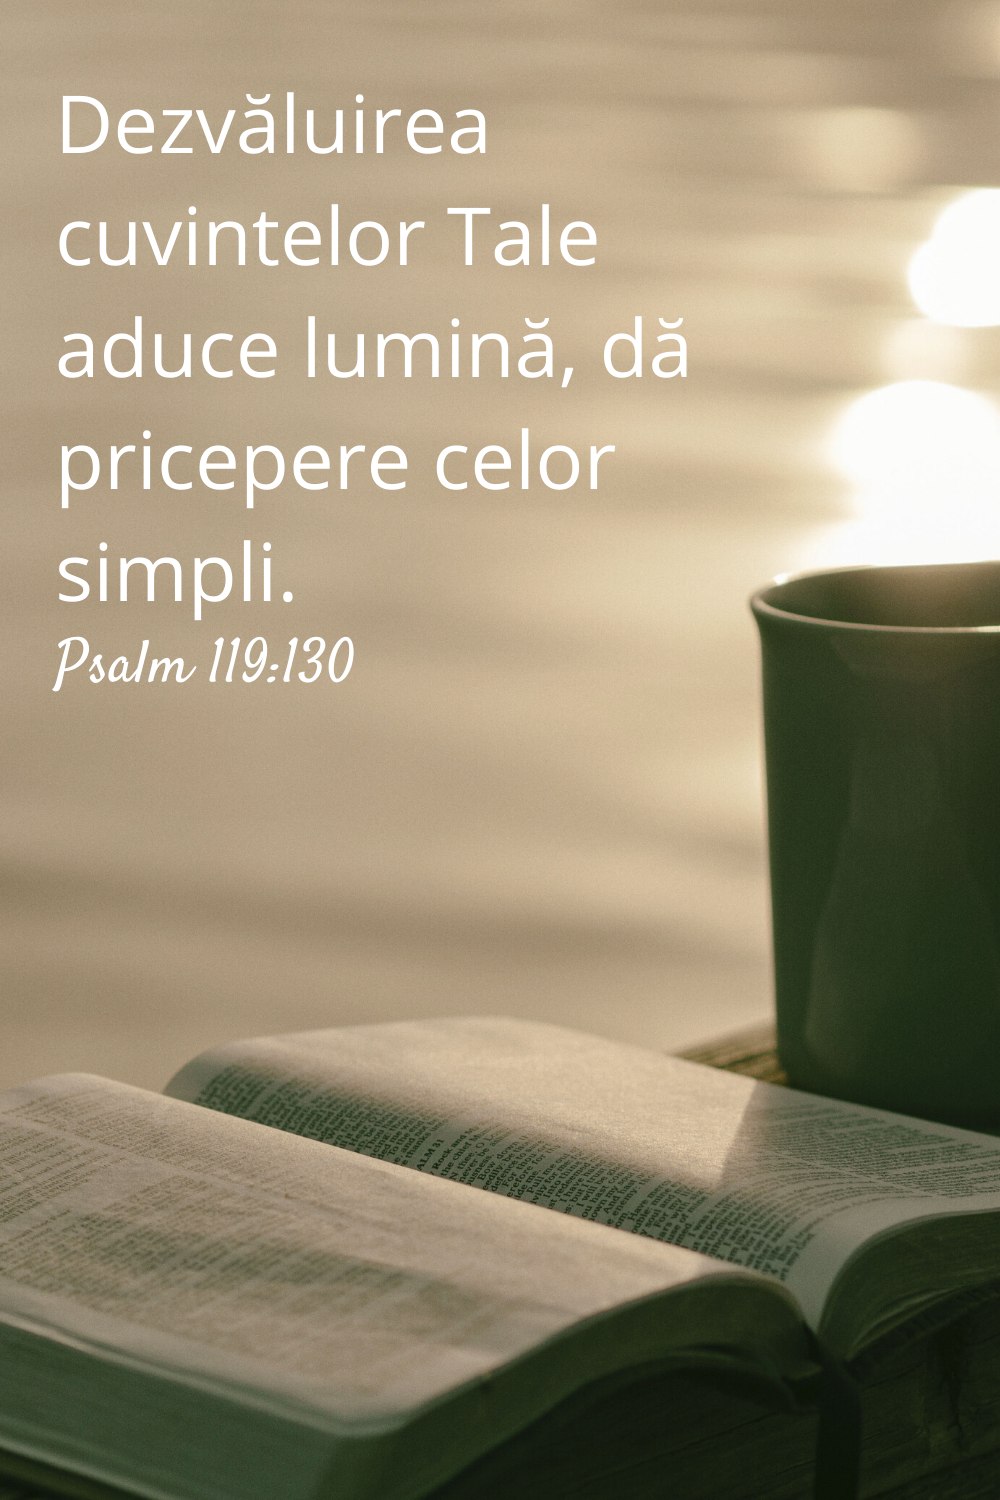 Dezvăluirea cuvintelor Tale aduce lumină, dă pricepere celor simpli. Psalm 119:130